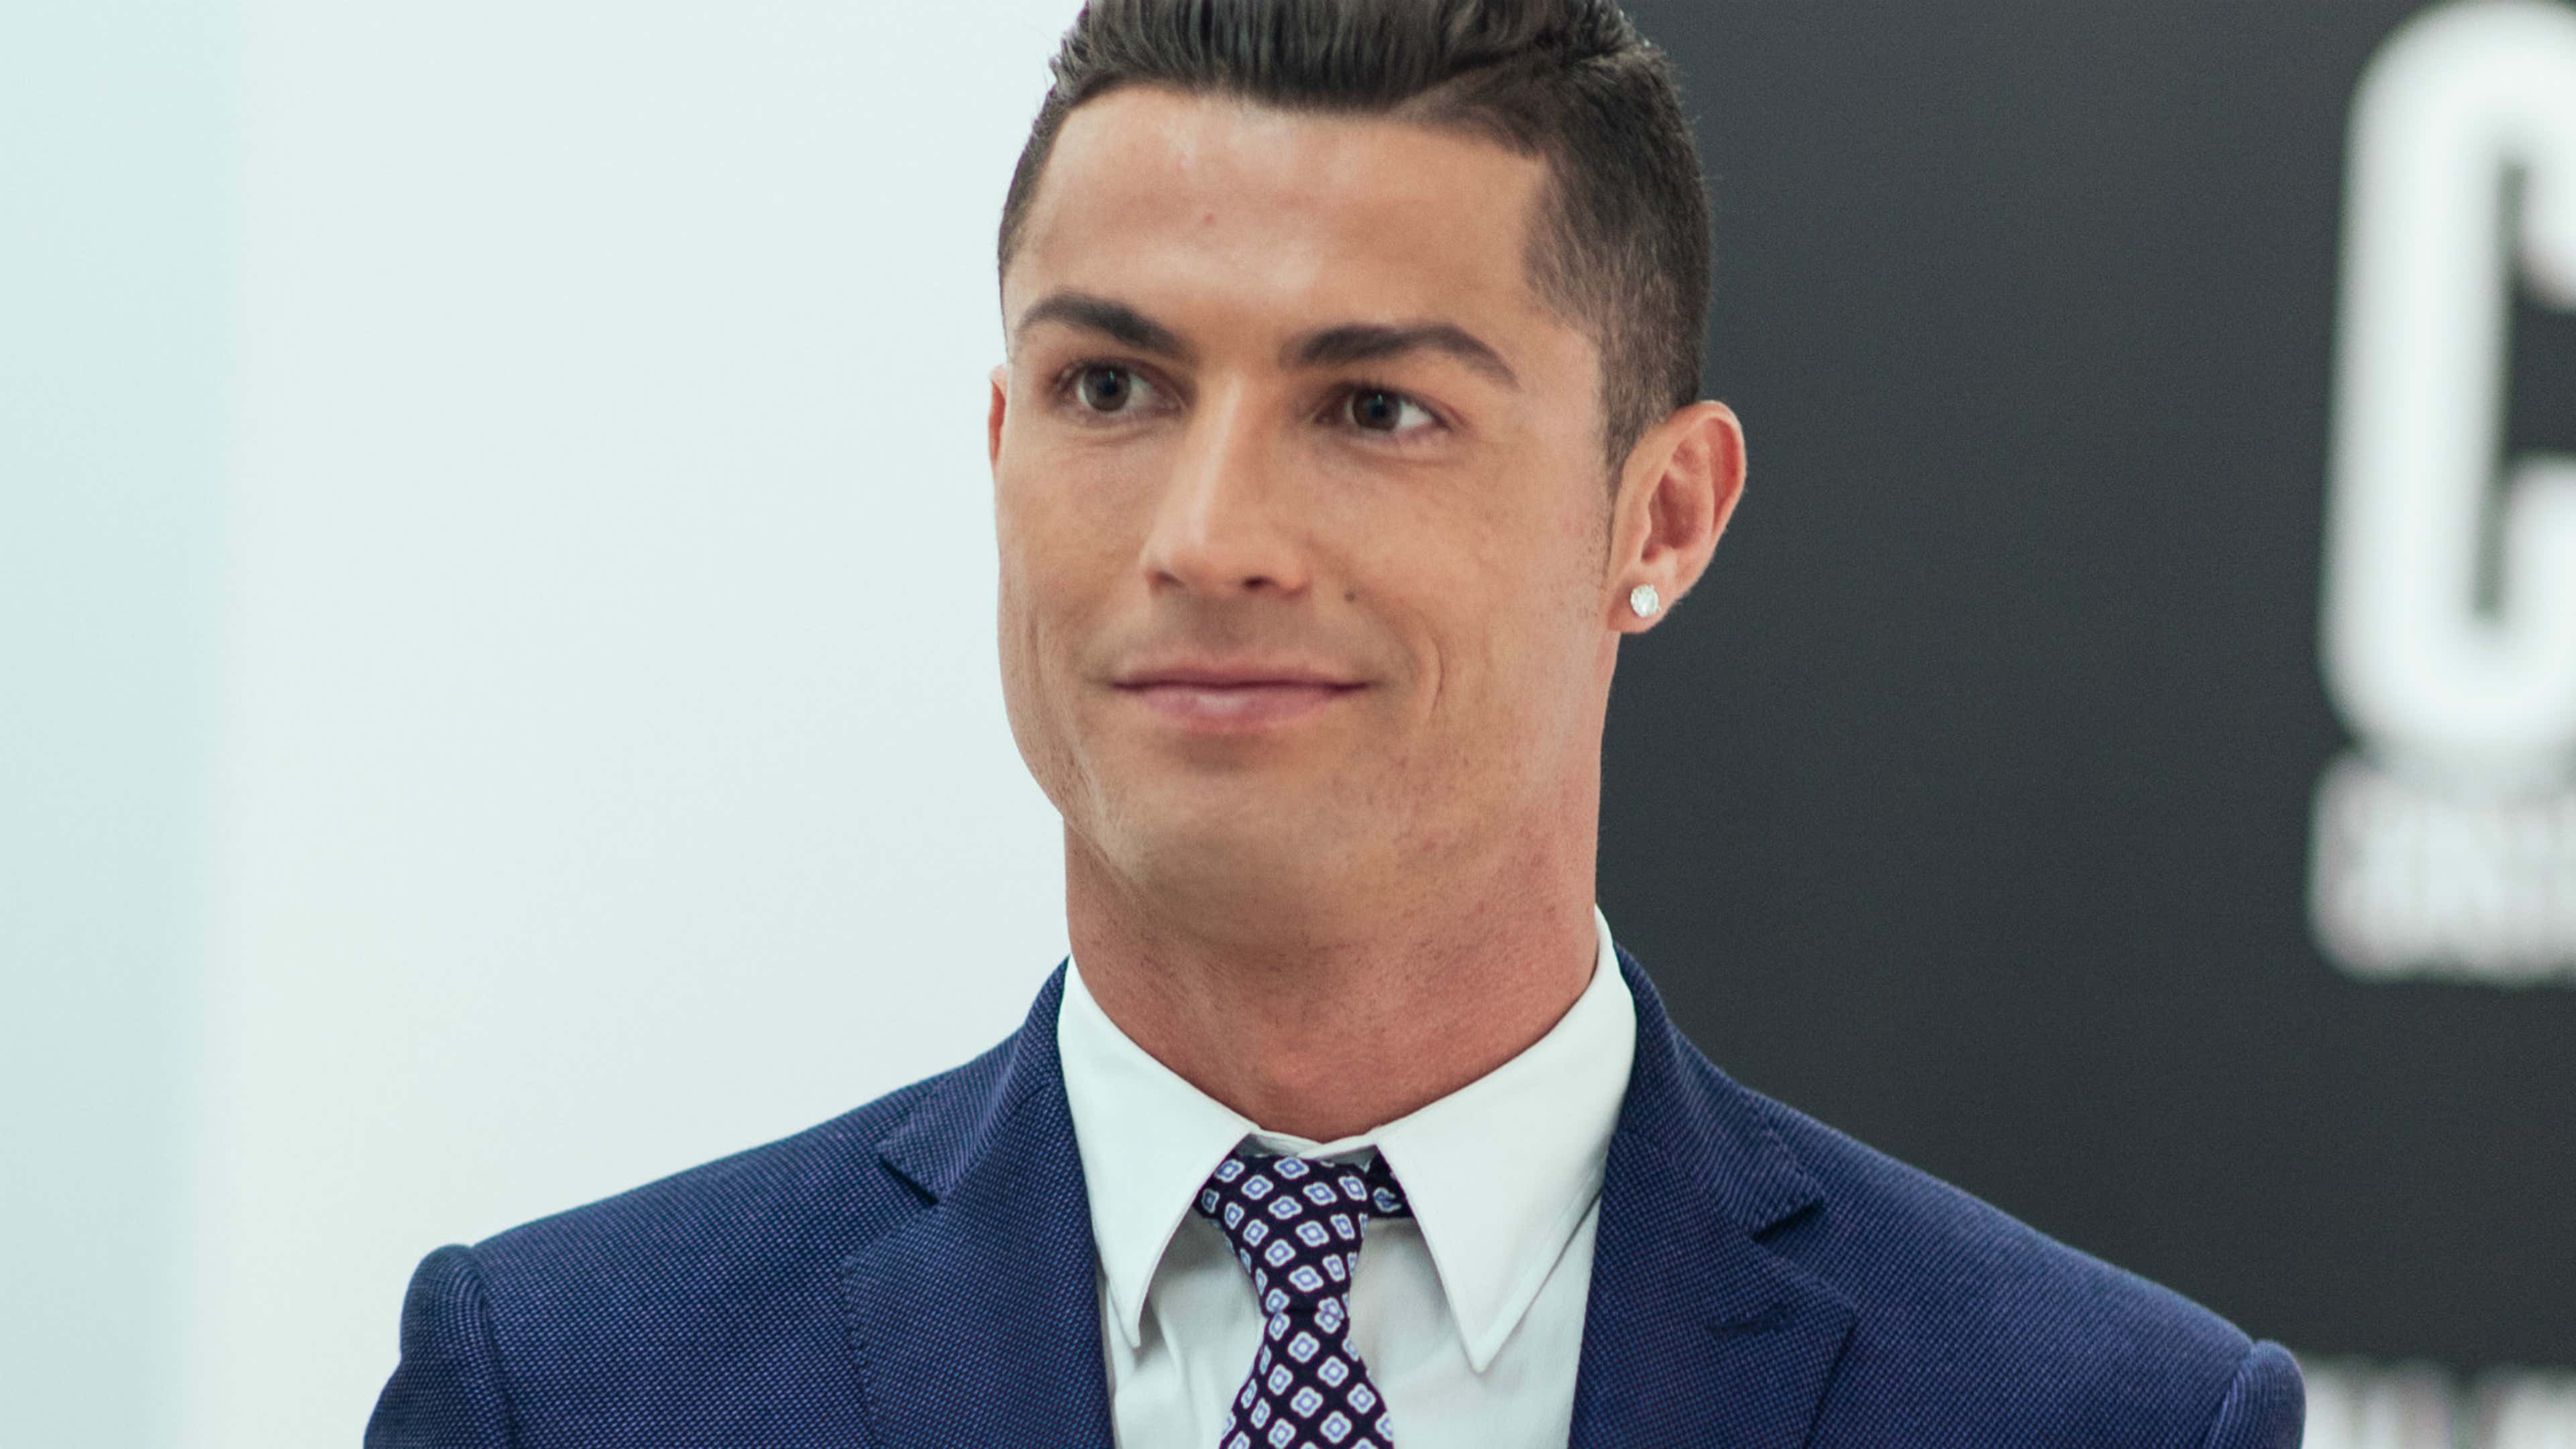 Cristiano Ronaldo on fashion: 'I look good because I am!